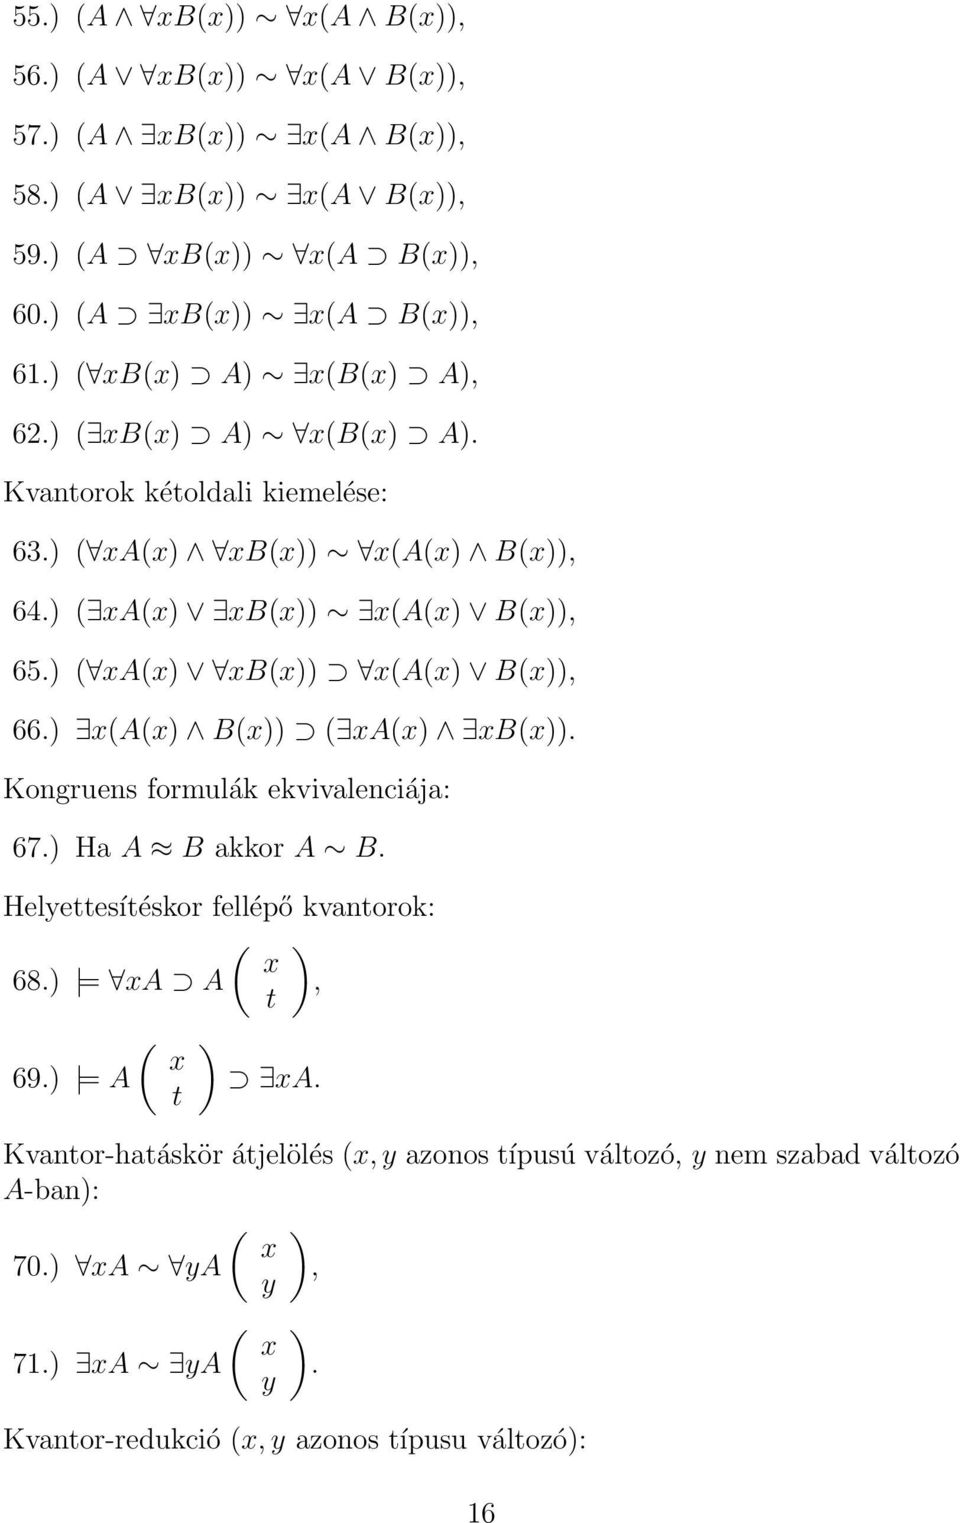 ) ( xa(x) xb(x)) x(a(x) B(x)), 66.) x(a(x) B(x)) ( xa(x) xb(x)). Kongruens formulák ekvivalenciája: 67.) Ha A B akkor A B. Helyettesítéskor fellépő kvantorok: ( ) x 68.